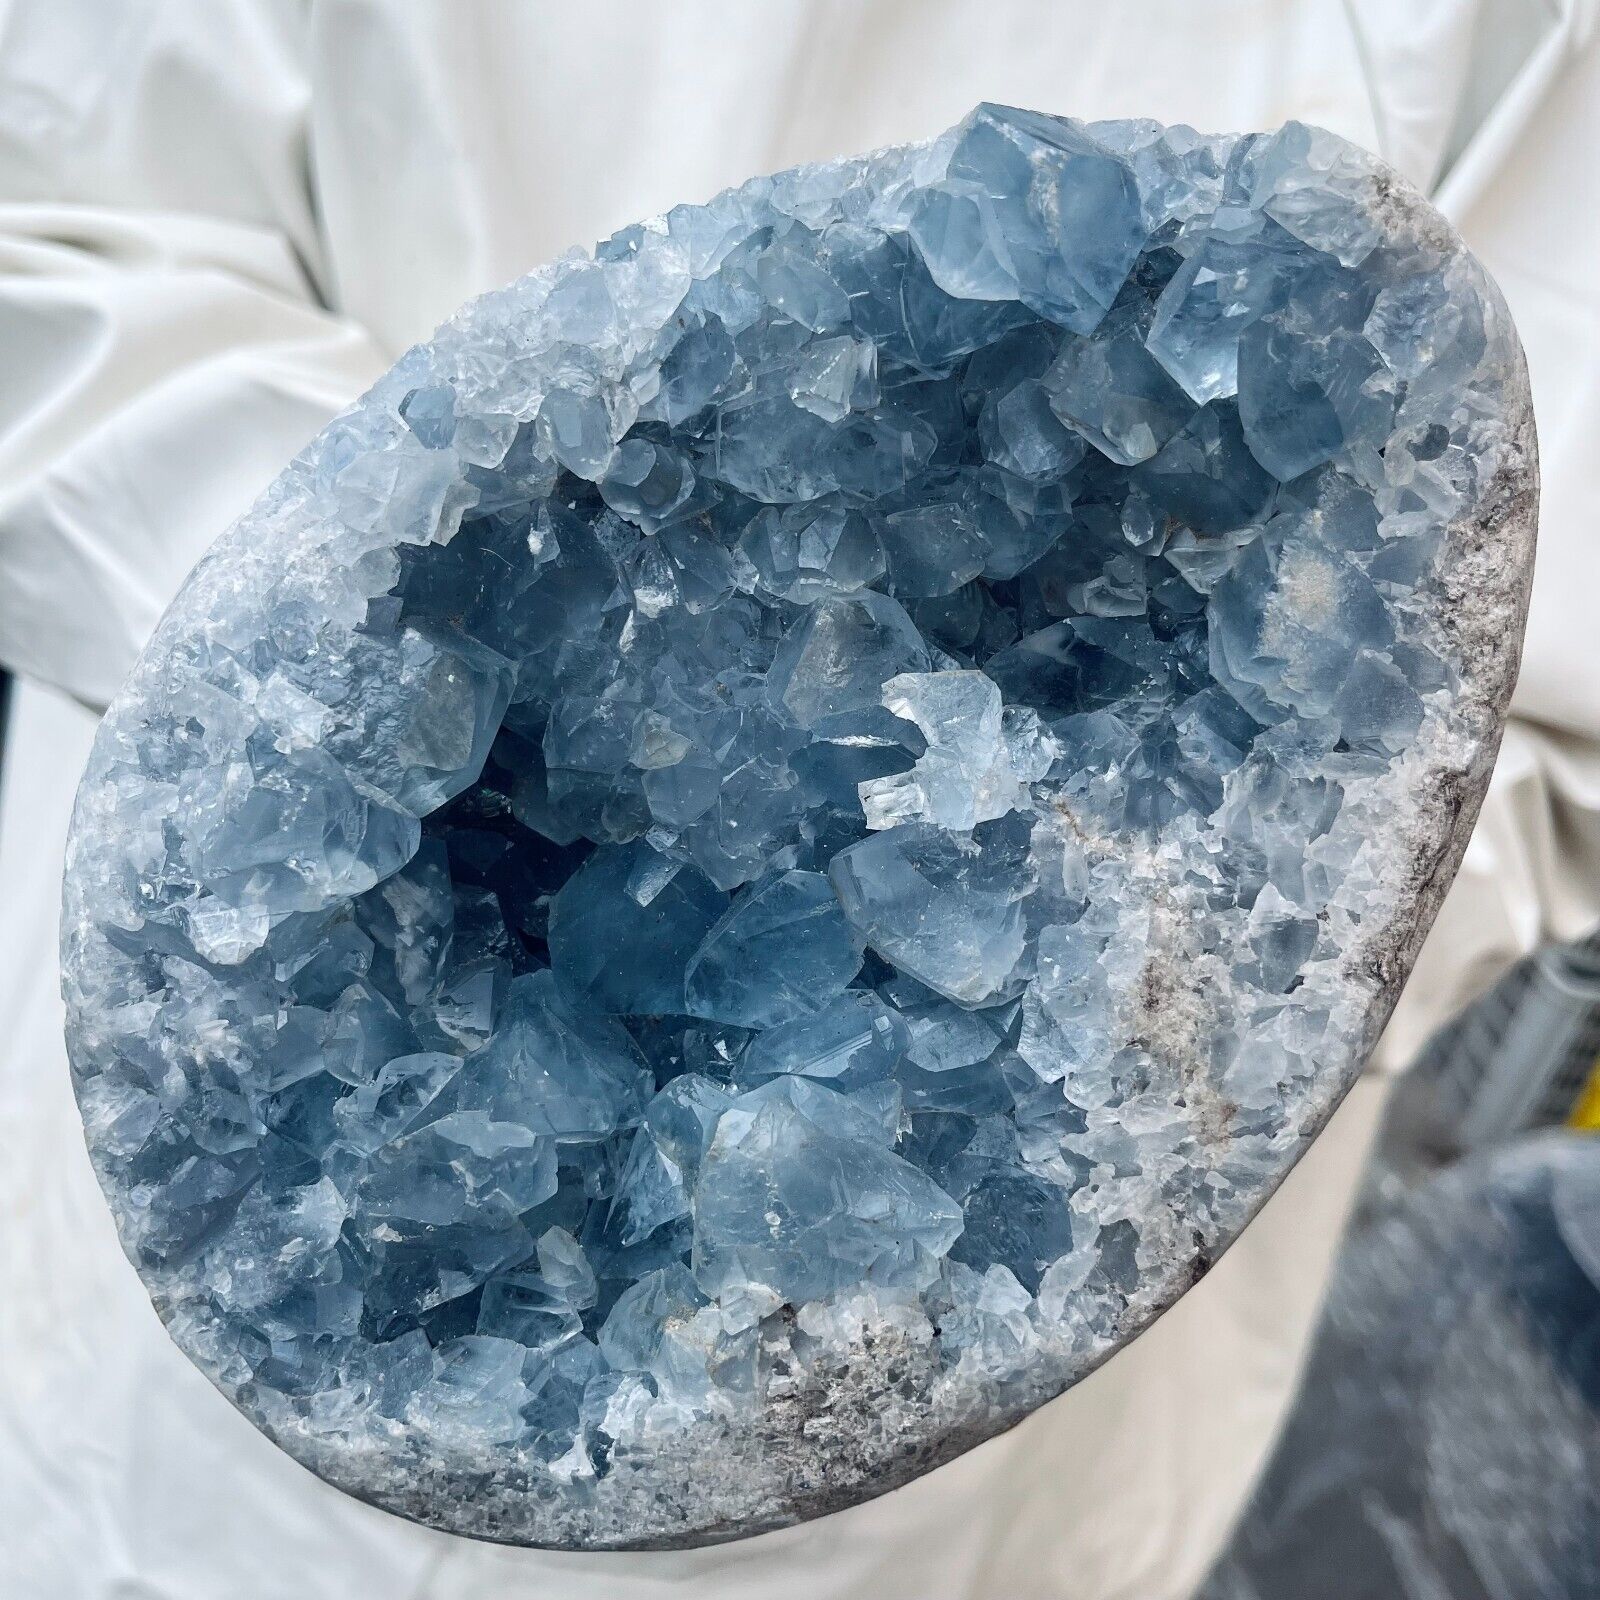 9.4lb Large Natural Blue Celestite Geode Quartz Crystal Mineral Specimen Healing